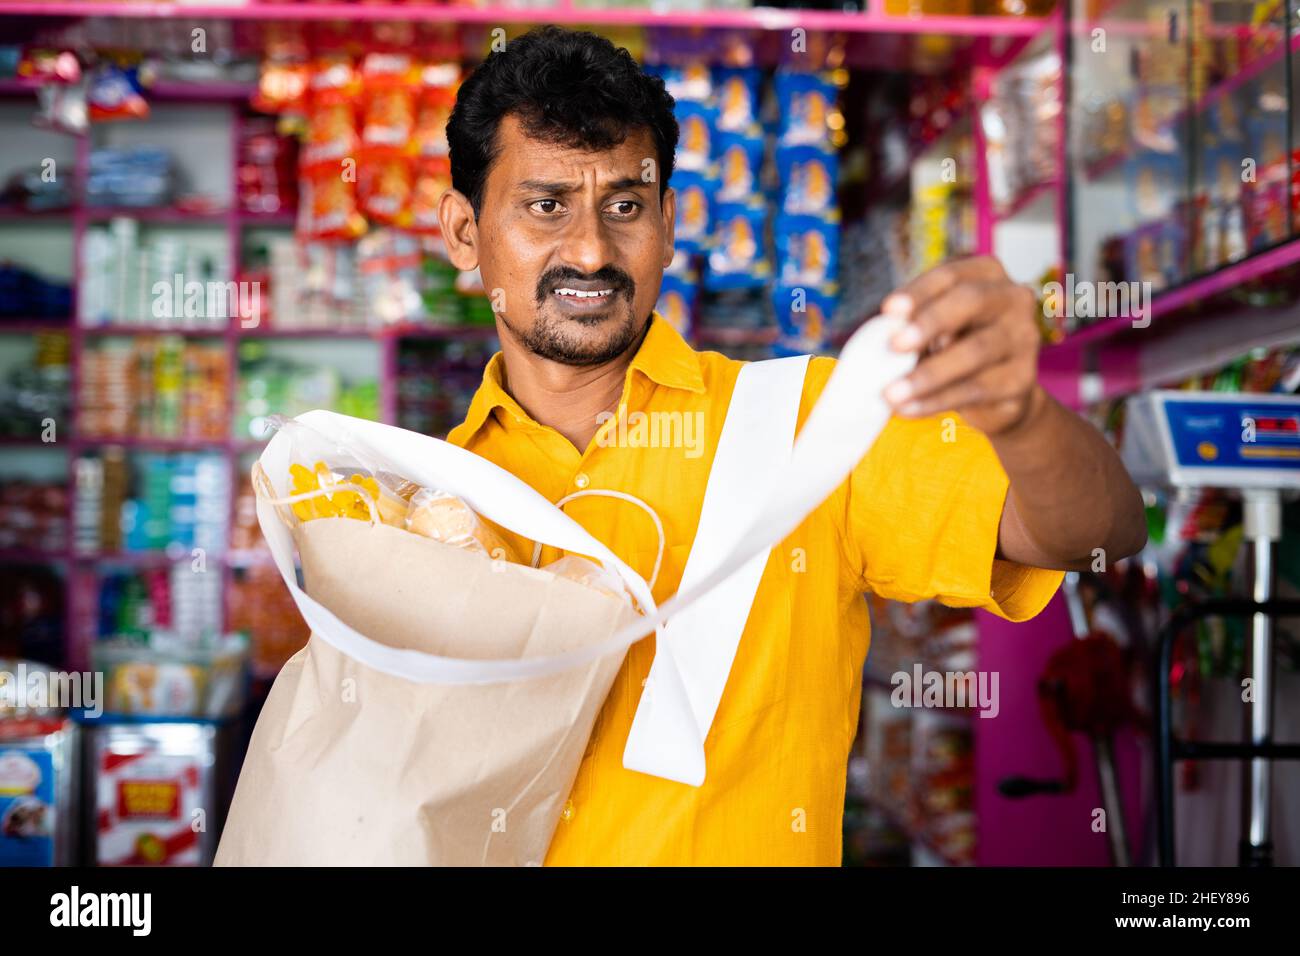 Schockierte Kunden in Kirana oder im Lebensmittelgeschäft, nachdem sie den Eingang der Lebensmittelrechnung gesehen hatten - Konzept der Inflation, steigender Preise und Konsumdenken. Stockfoto